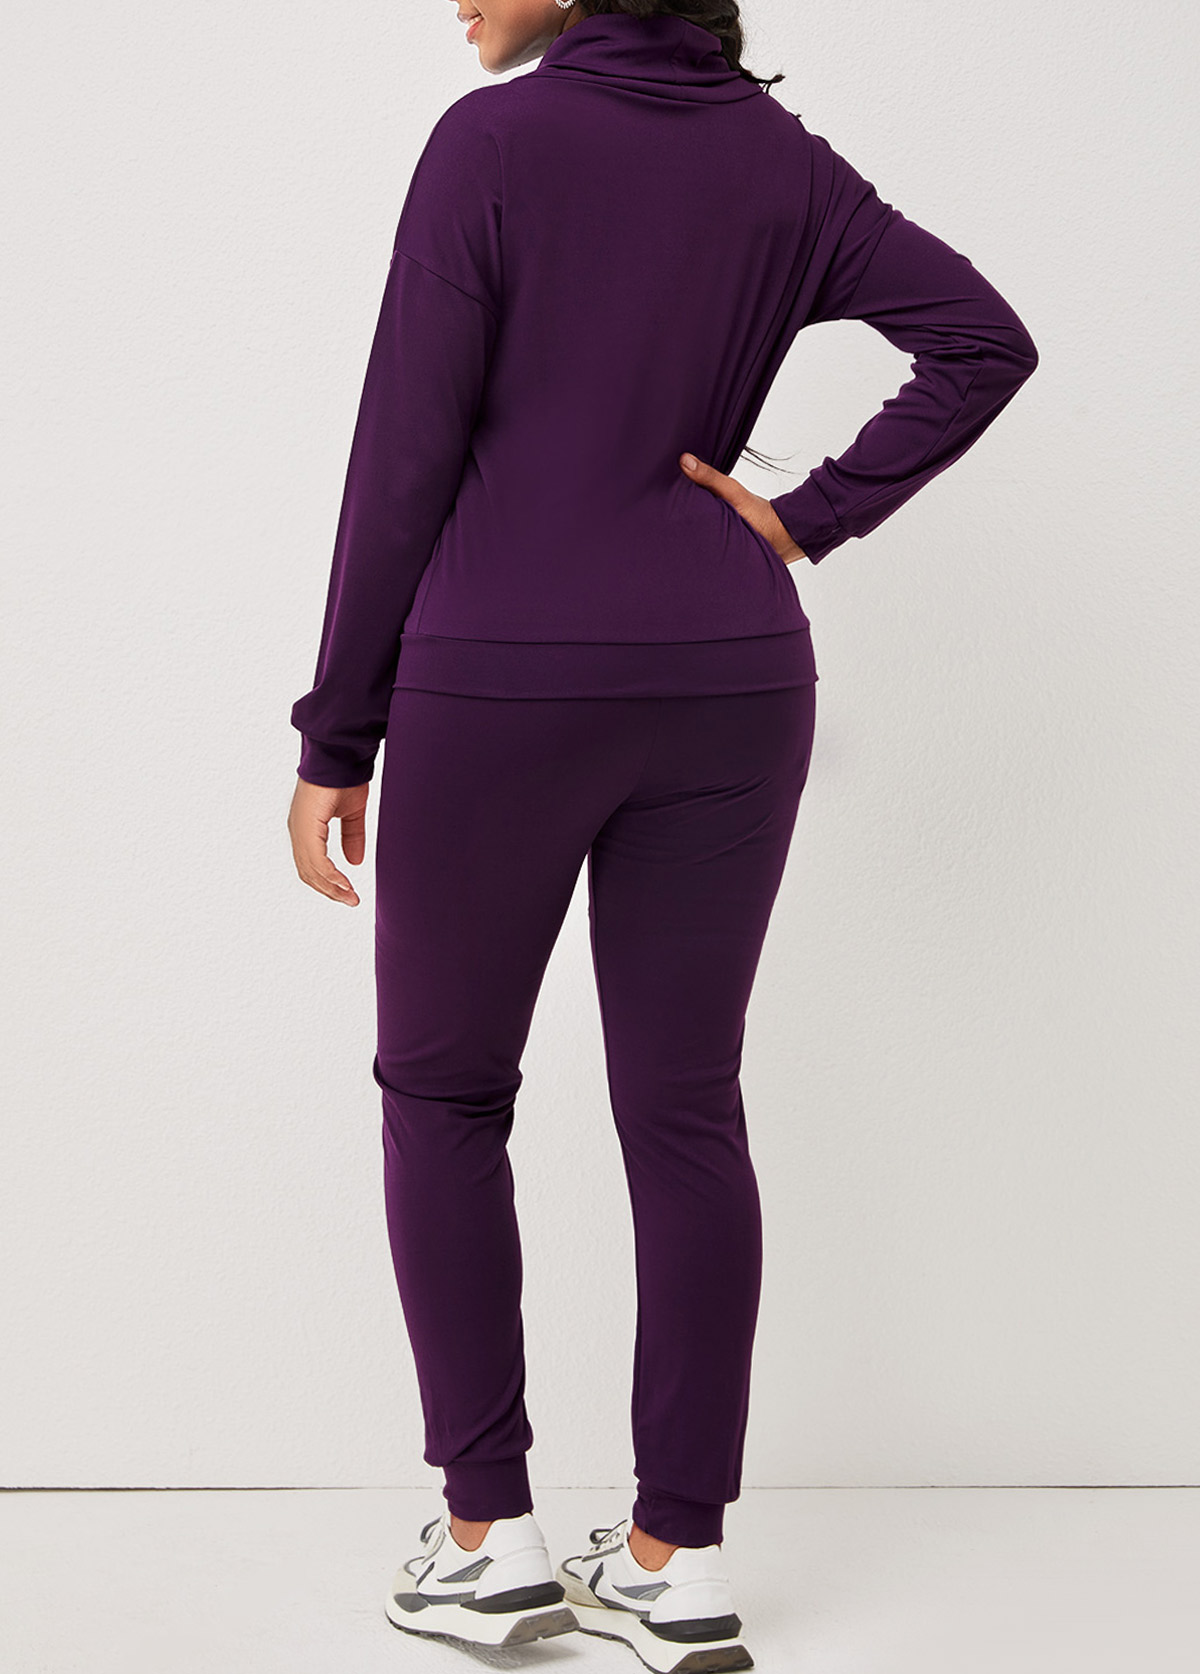 Letter Print Cowl Neck Purple Sweatsuit Set